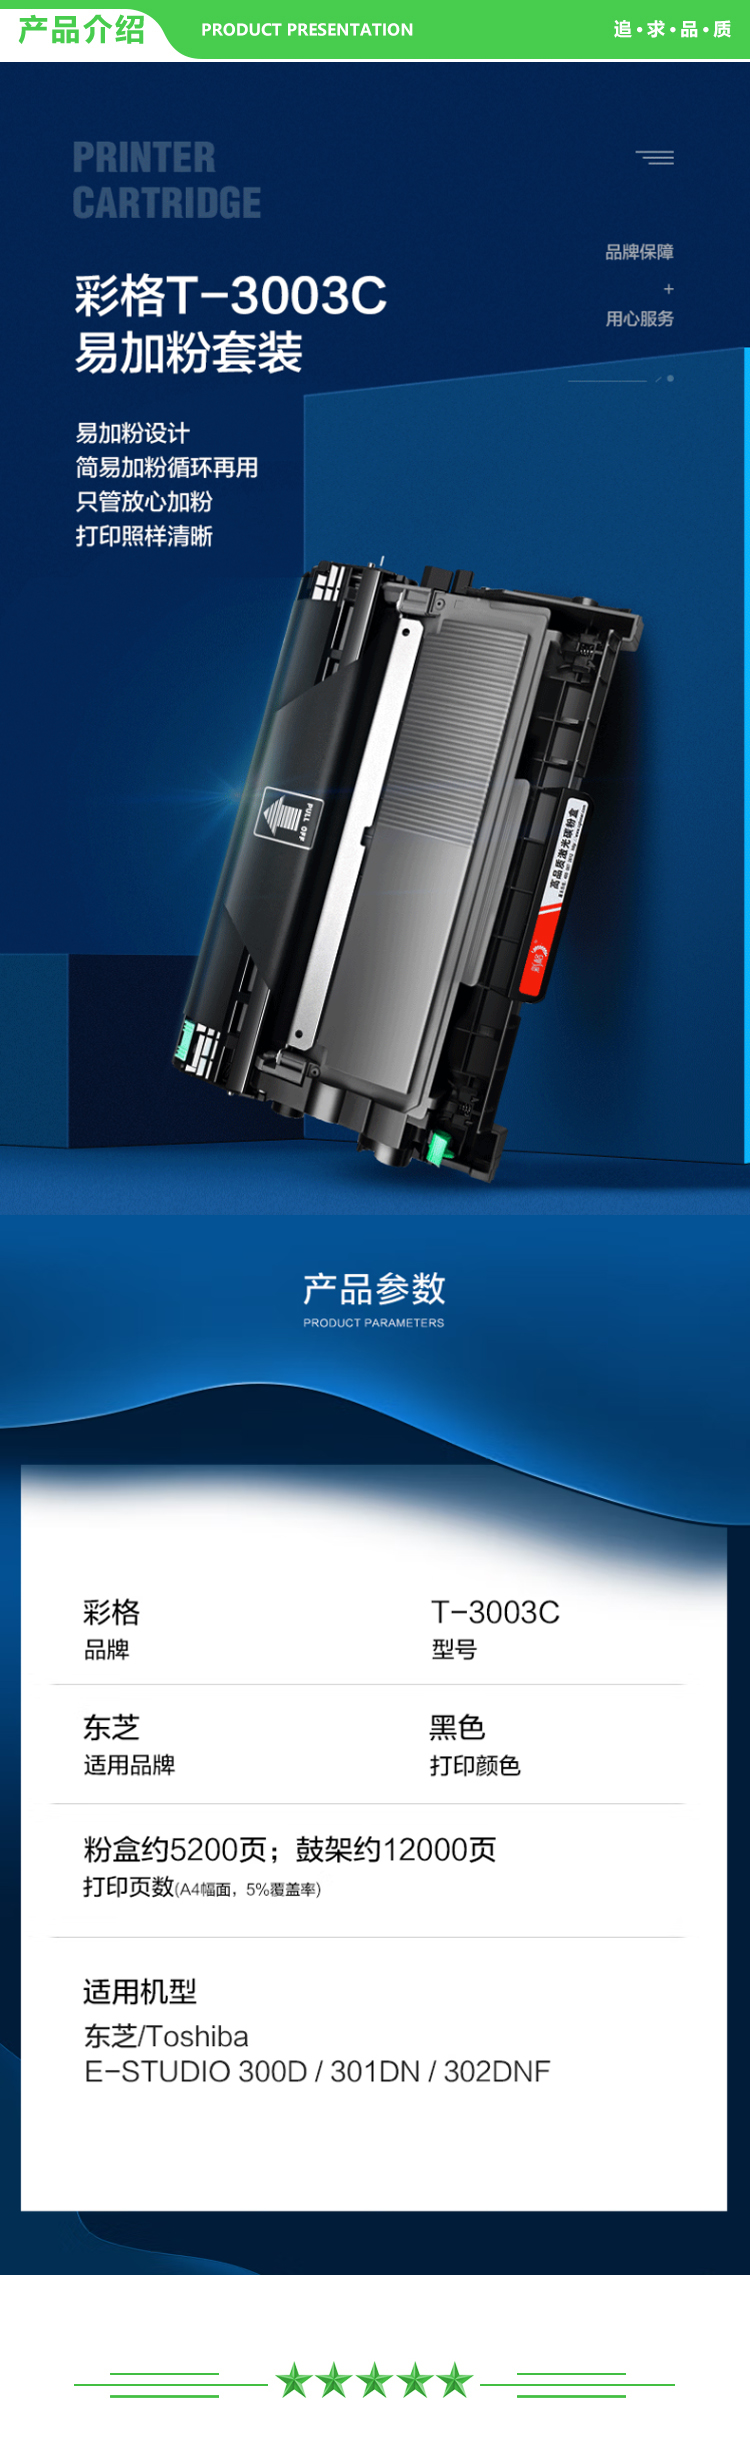 彩格 T-3003C 大容量硒鼓粉盒套装 适用东芝Toshiba 300D硒鼓墨盒 301dn粉盒 DP3003墨粉盒 302dnf打印机硒鼓墨盒.jpg